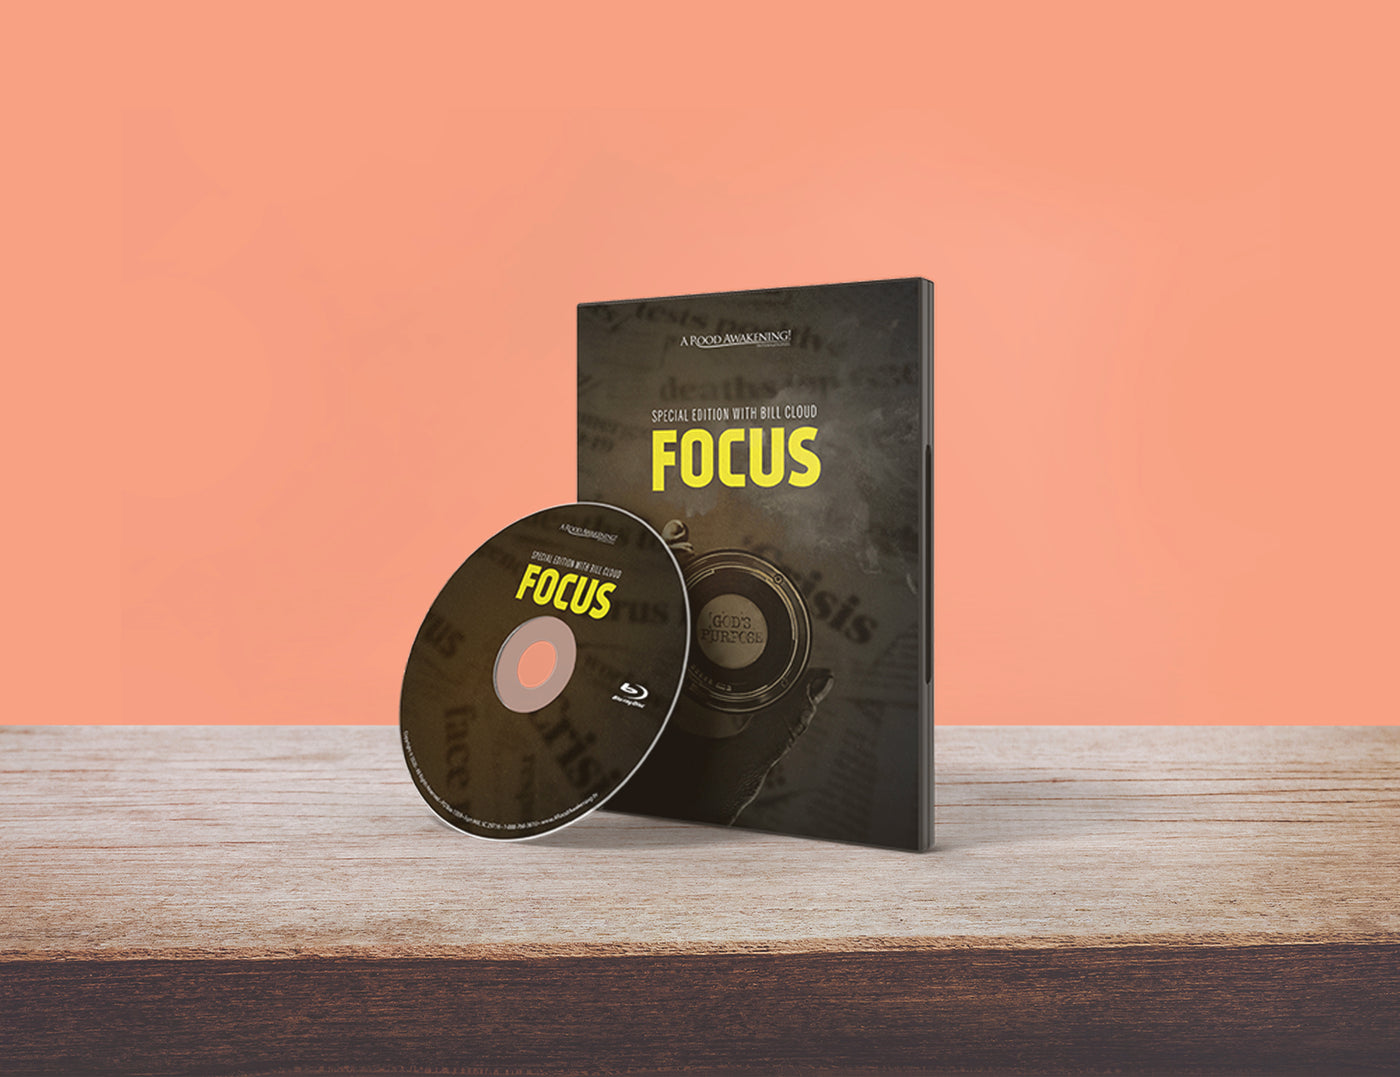 November 2020 Love Gift Teaching: "Focus"